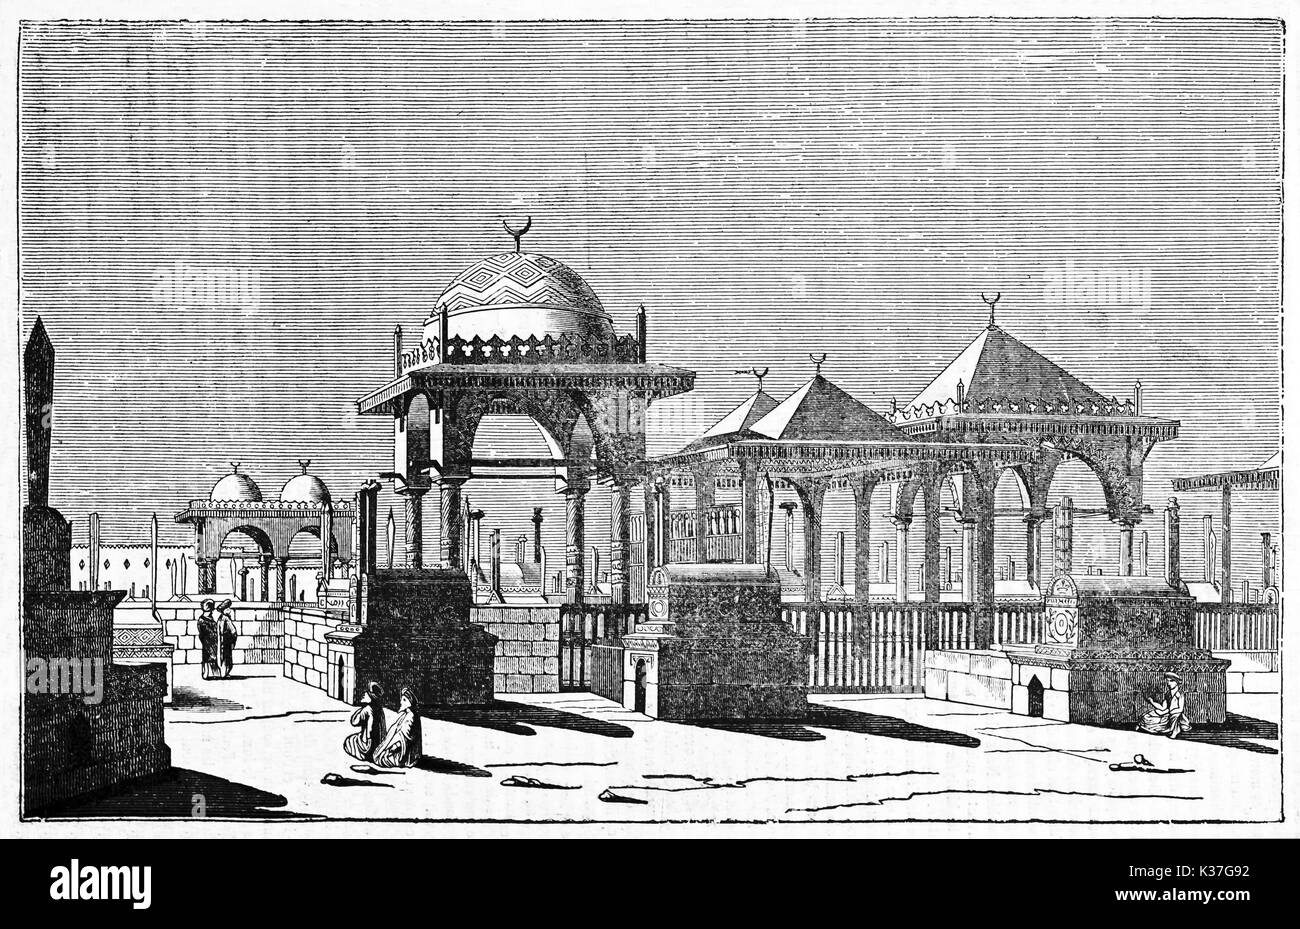 Ancien cimetière musulman au Caire, Egypte, en vedette par des formes typiques de l'architecture arabe. Vieille Illustration par Jackson, publié le Magasin Pittoresque, Paris, 1834 Banque D'Images